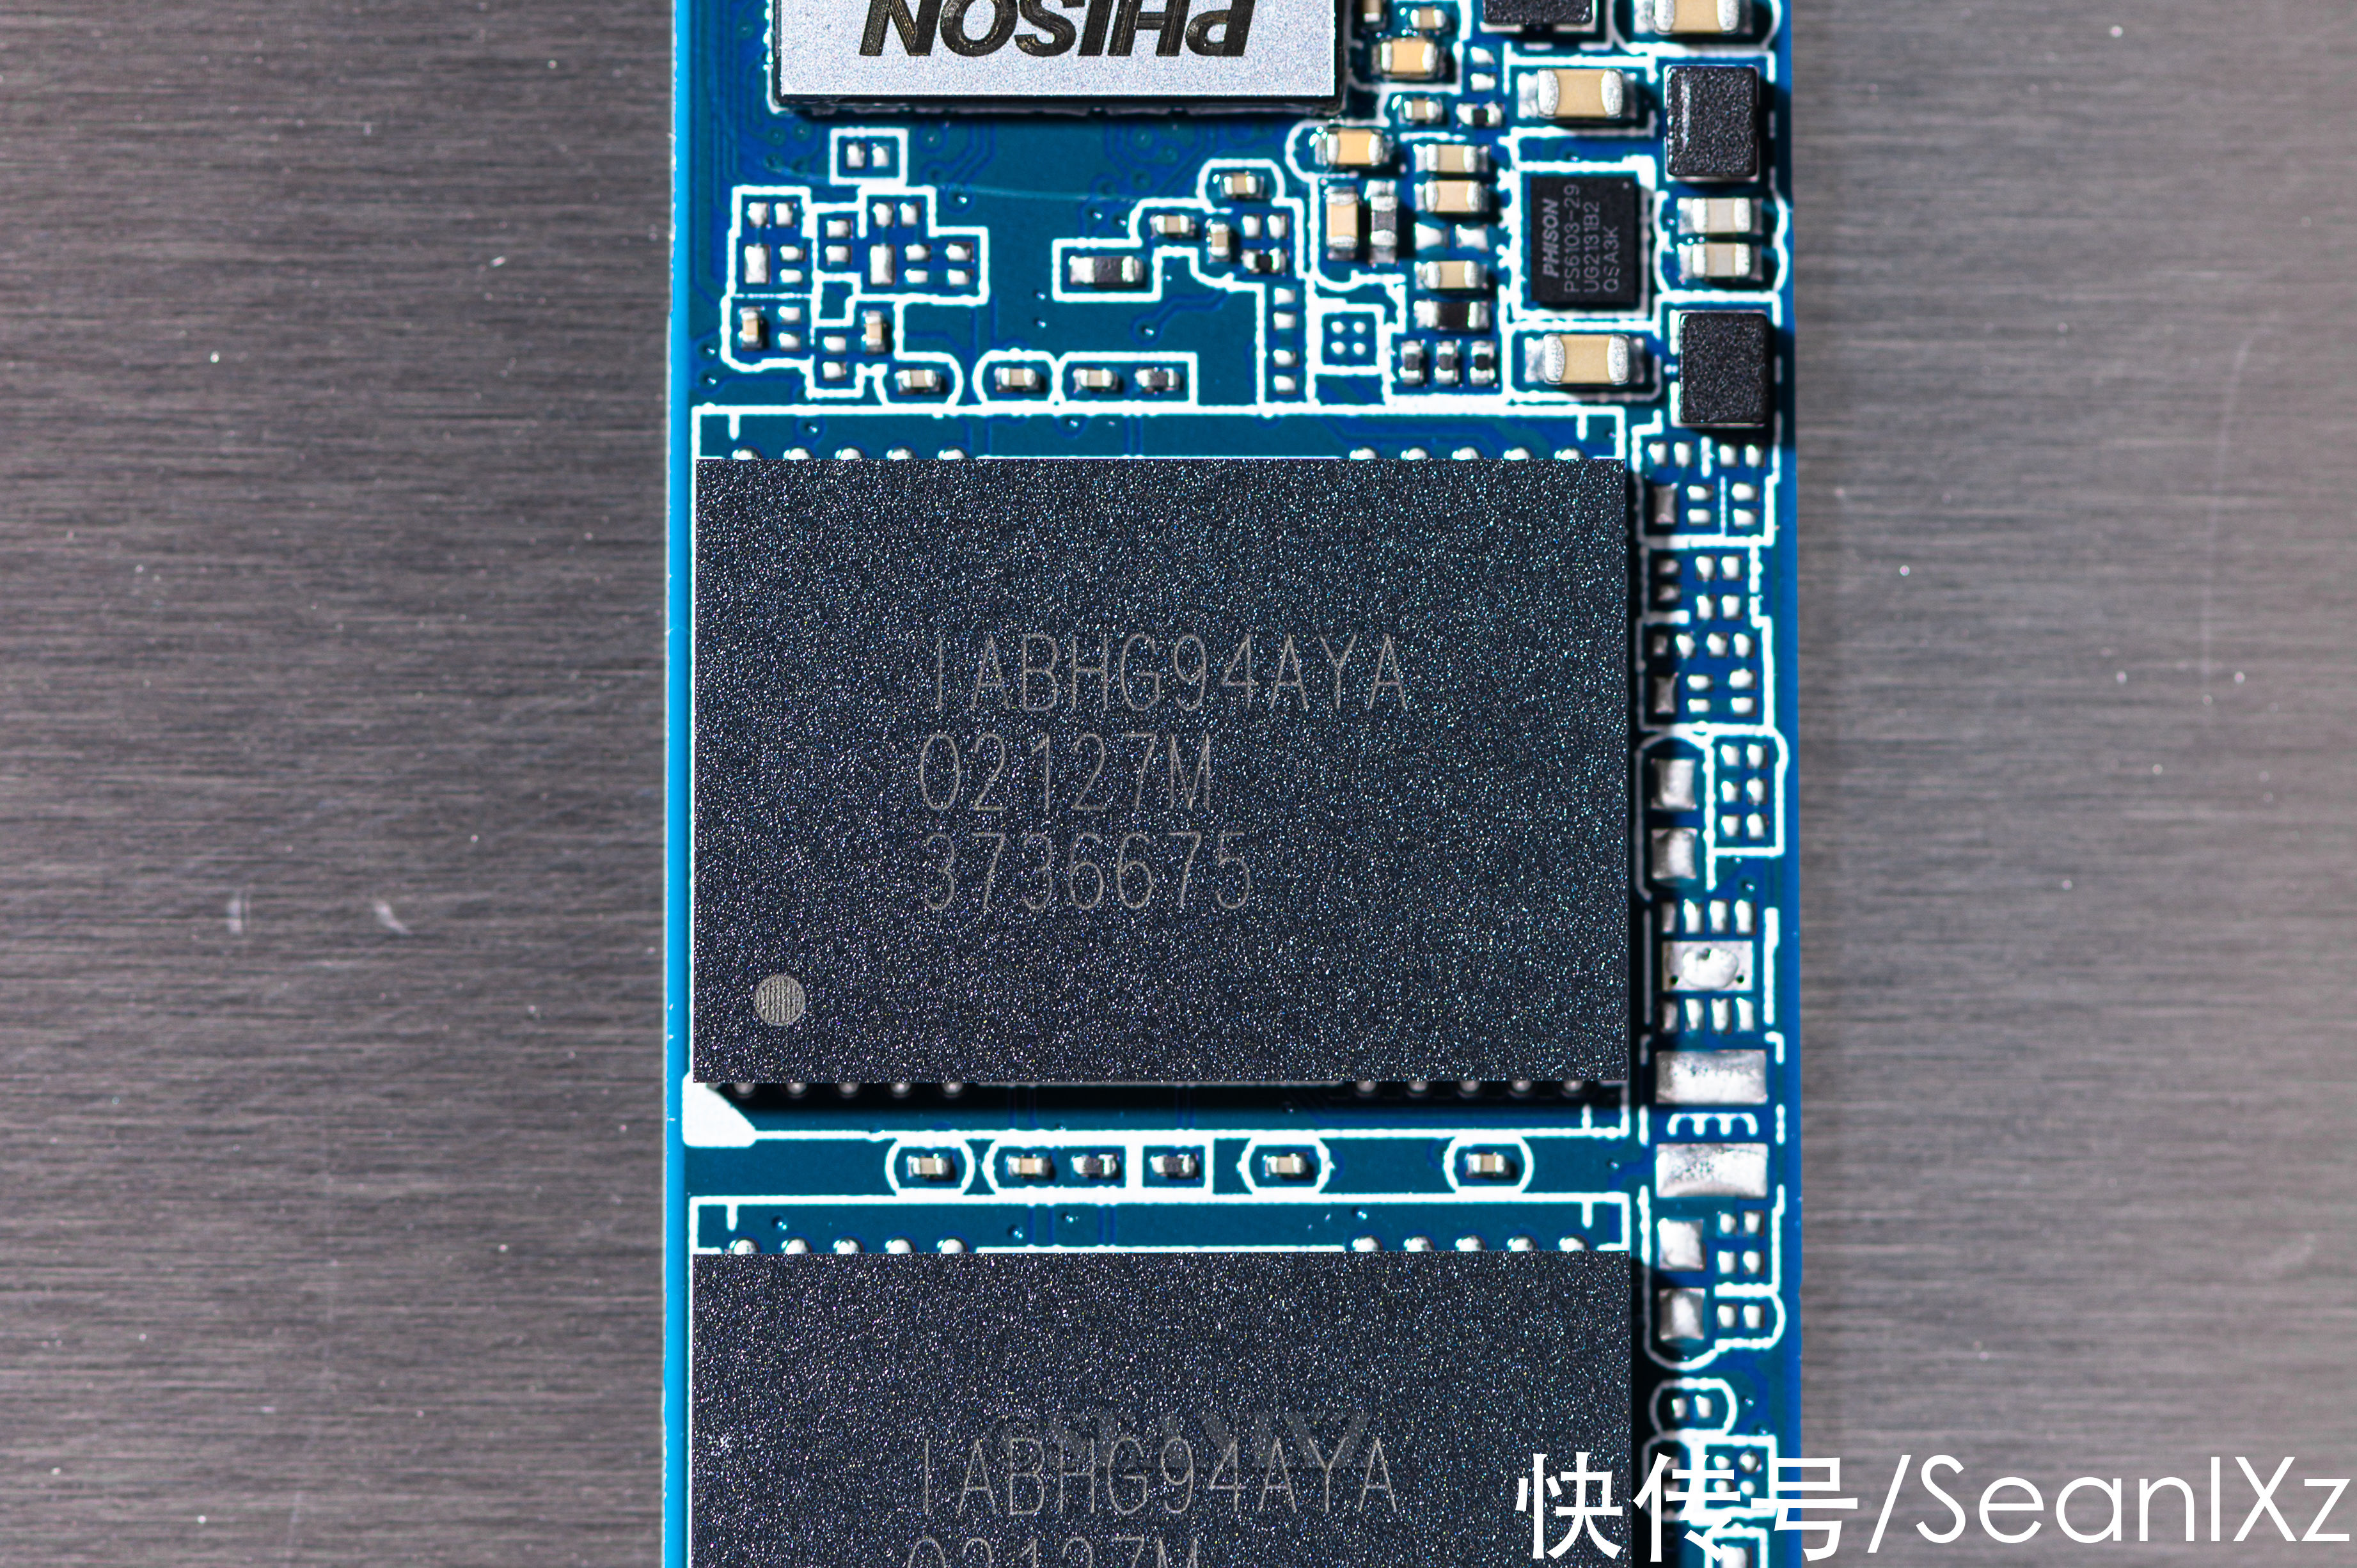 速度|扩容提速升级首选：PNY CS2140 PCIE4.0 NVMe M.2 SSD 1T固态硬盘 评测